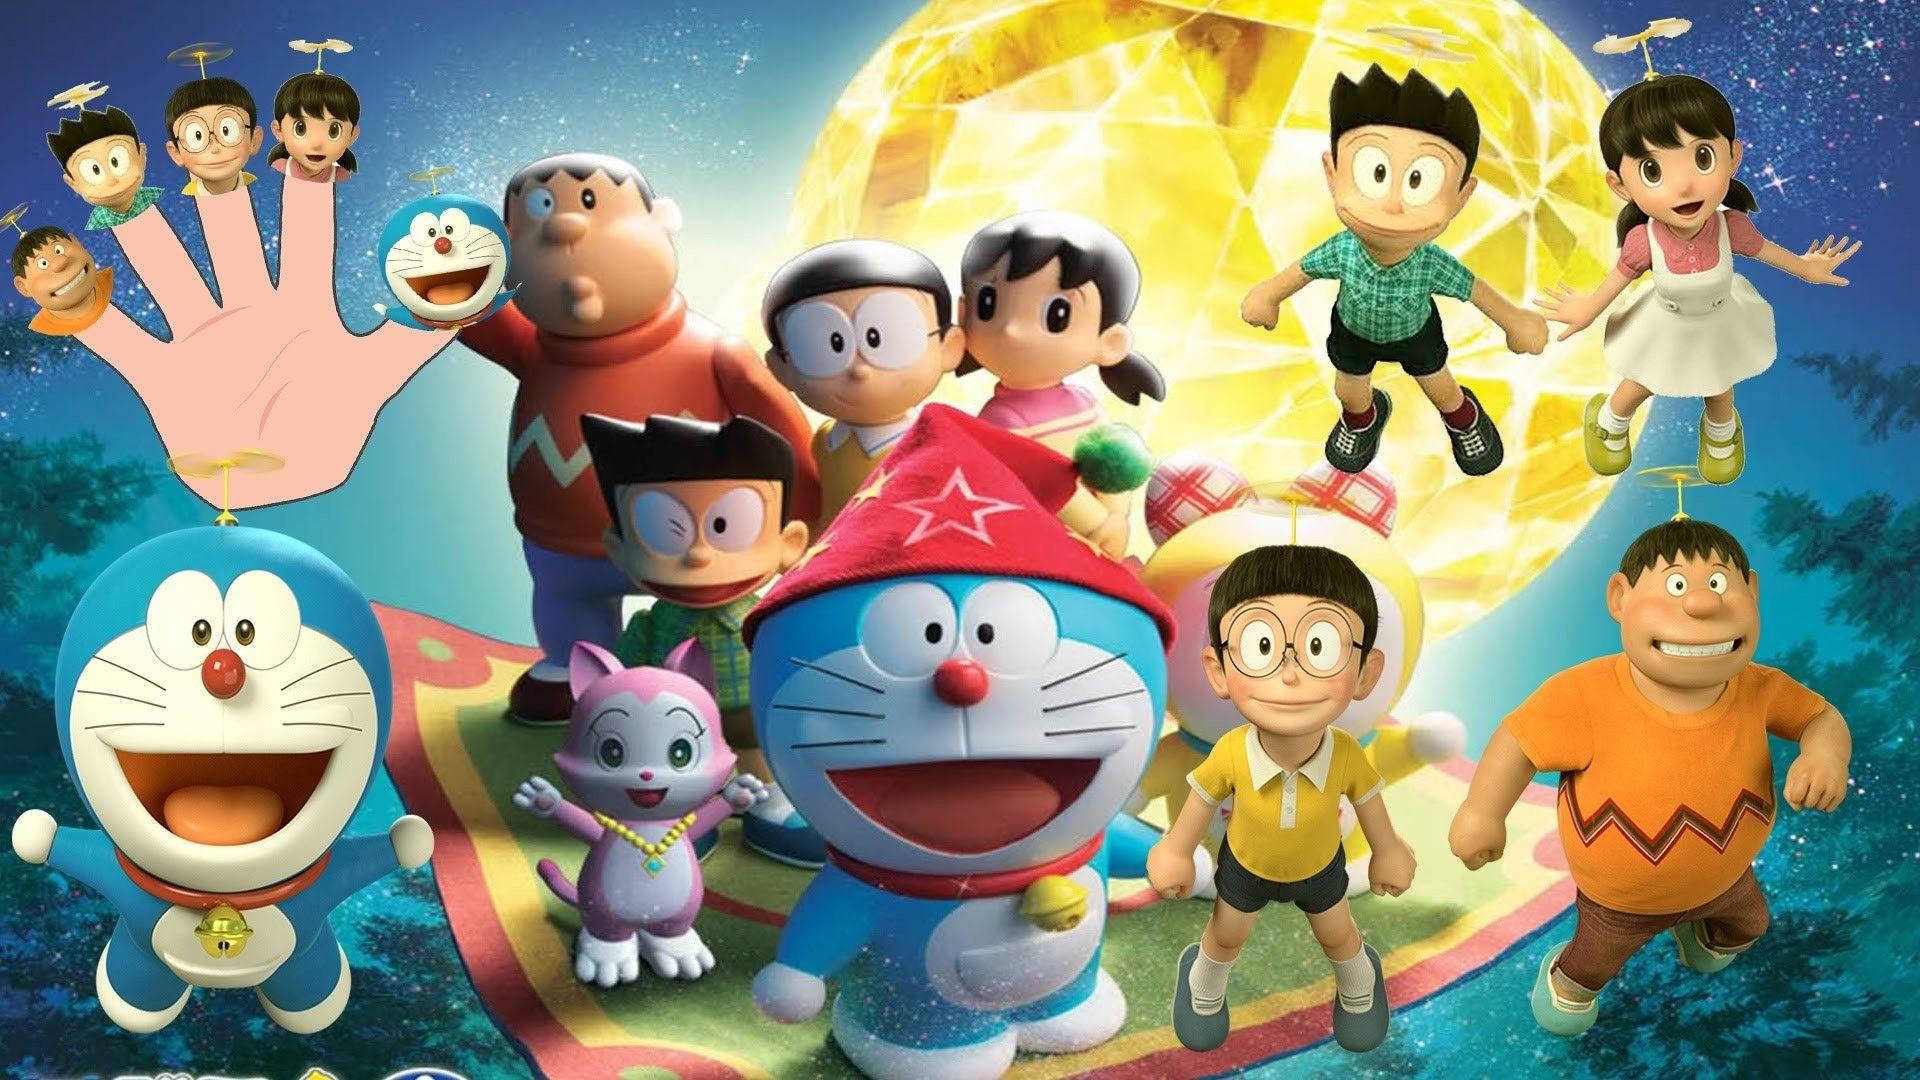 Doraemon 3D Film Plakat. Wallpaper